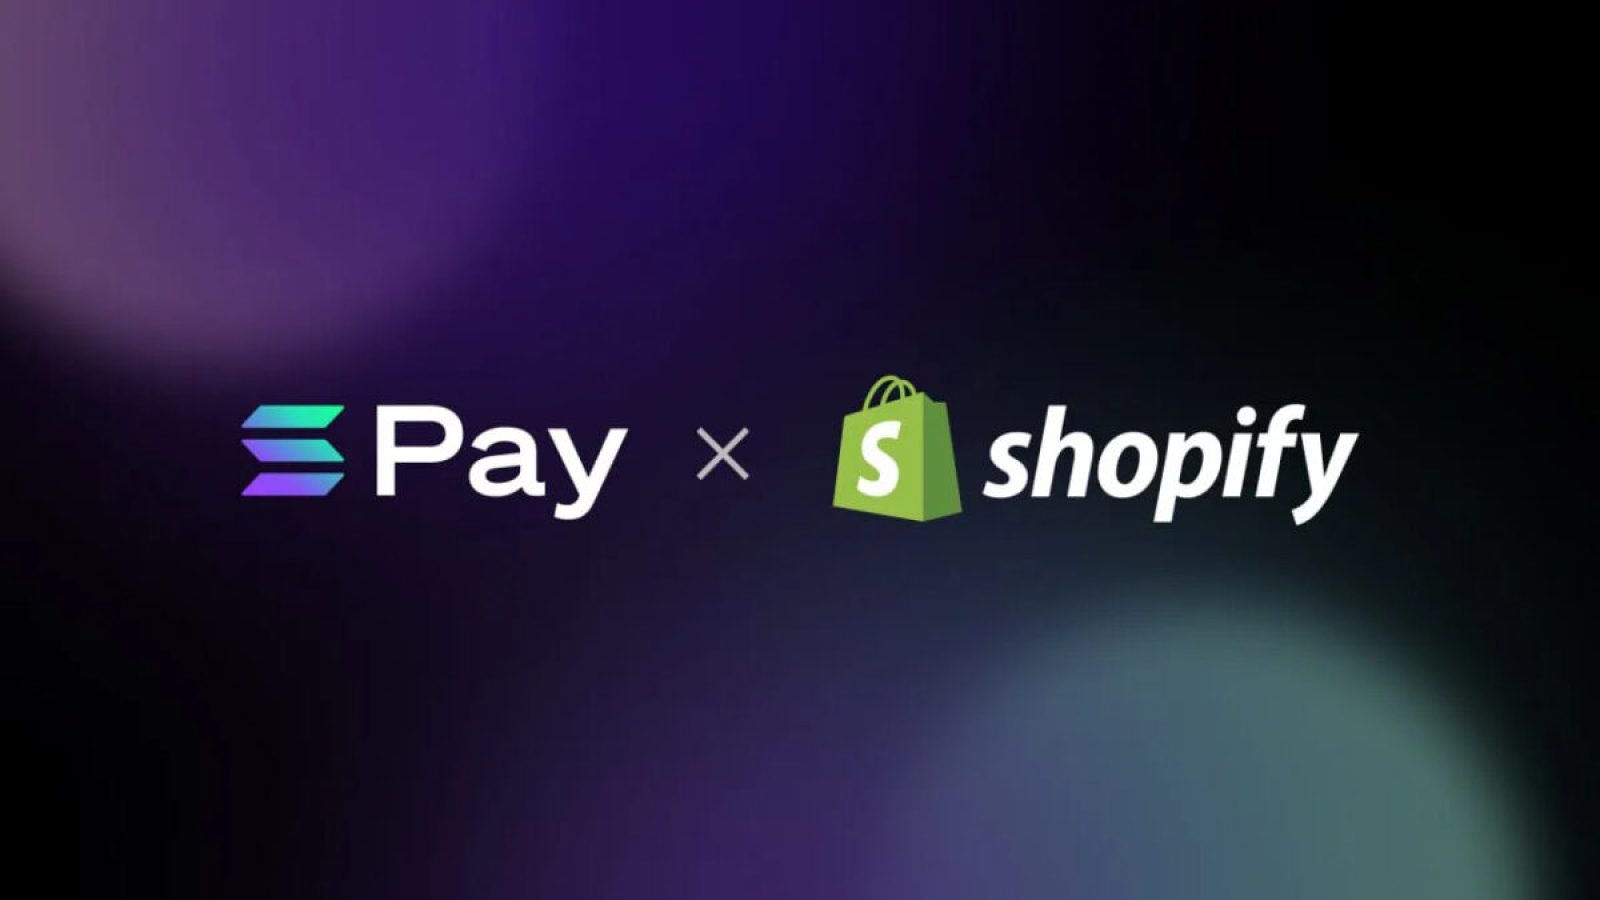 電商服務龍頭 Shopify 導入 Solana Pay 加密貨幣支付功能